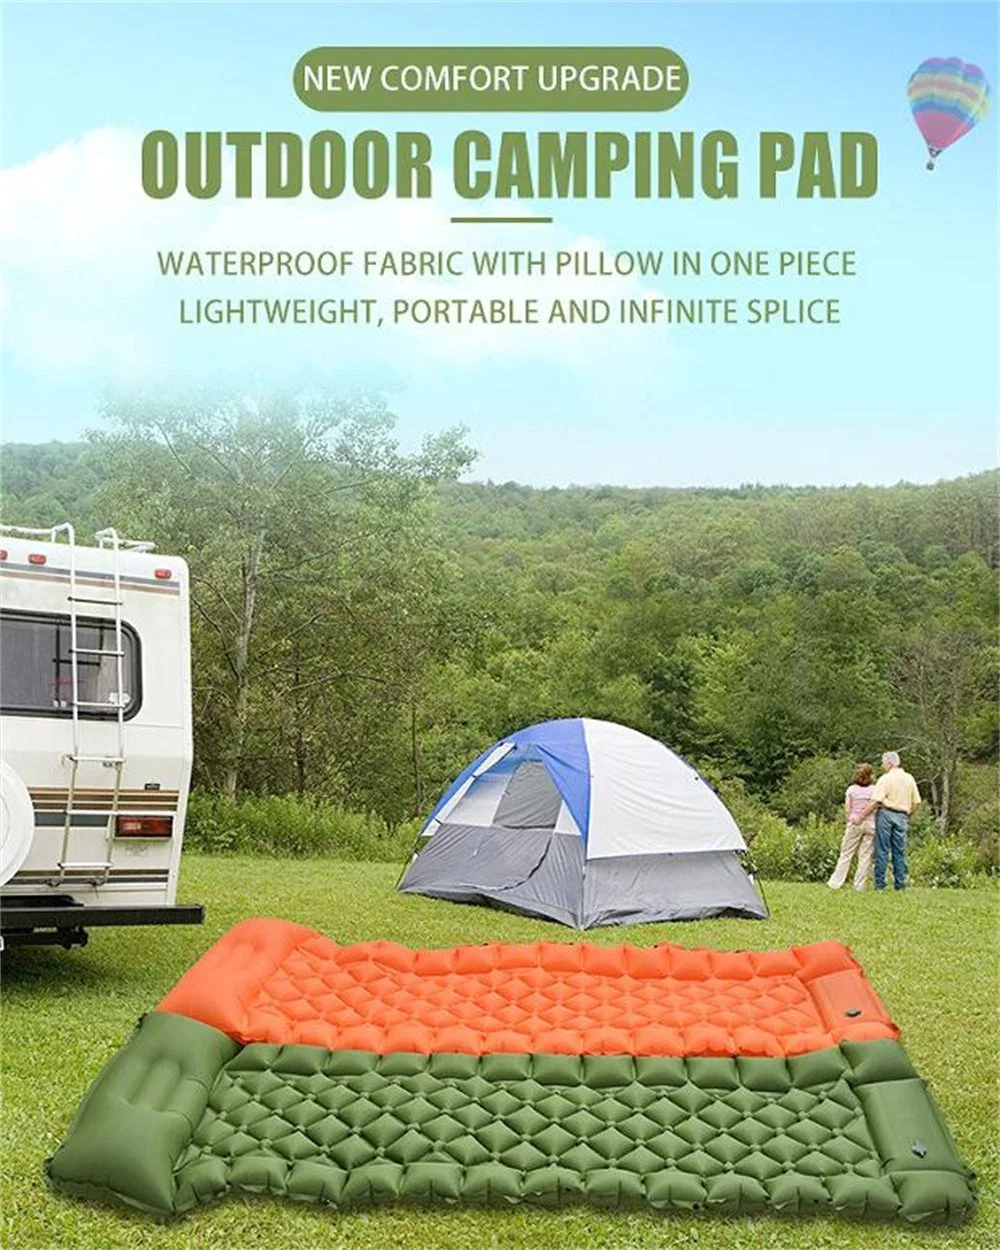 Camping Air Mattress Bed Foot Press Pump Backpacking Hiking Inflatable Picnic Self Inflating Sleeping Pad